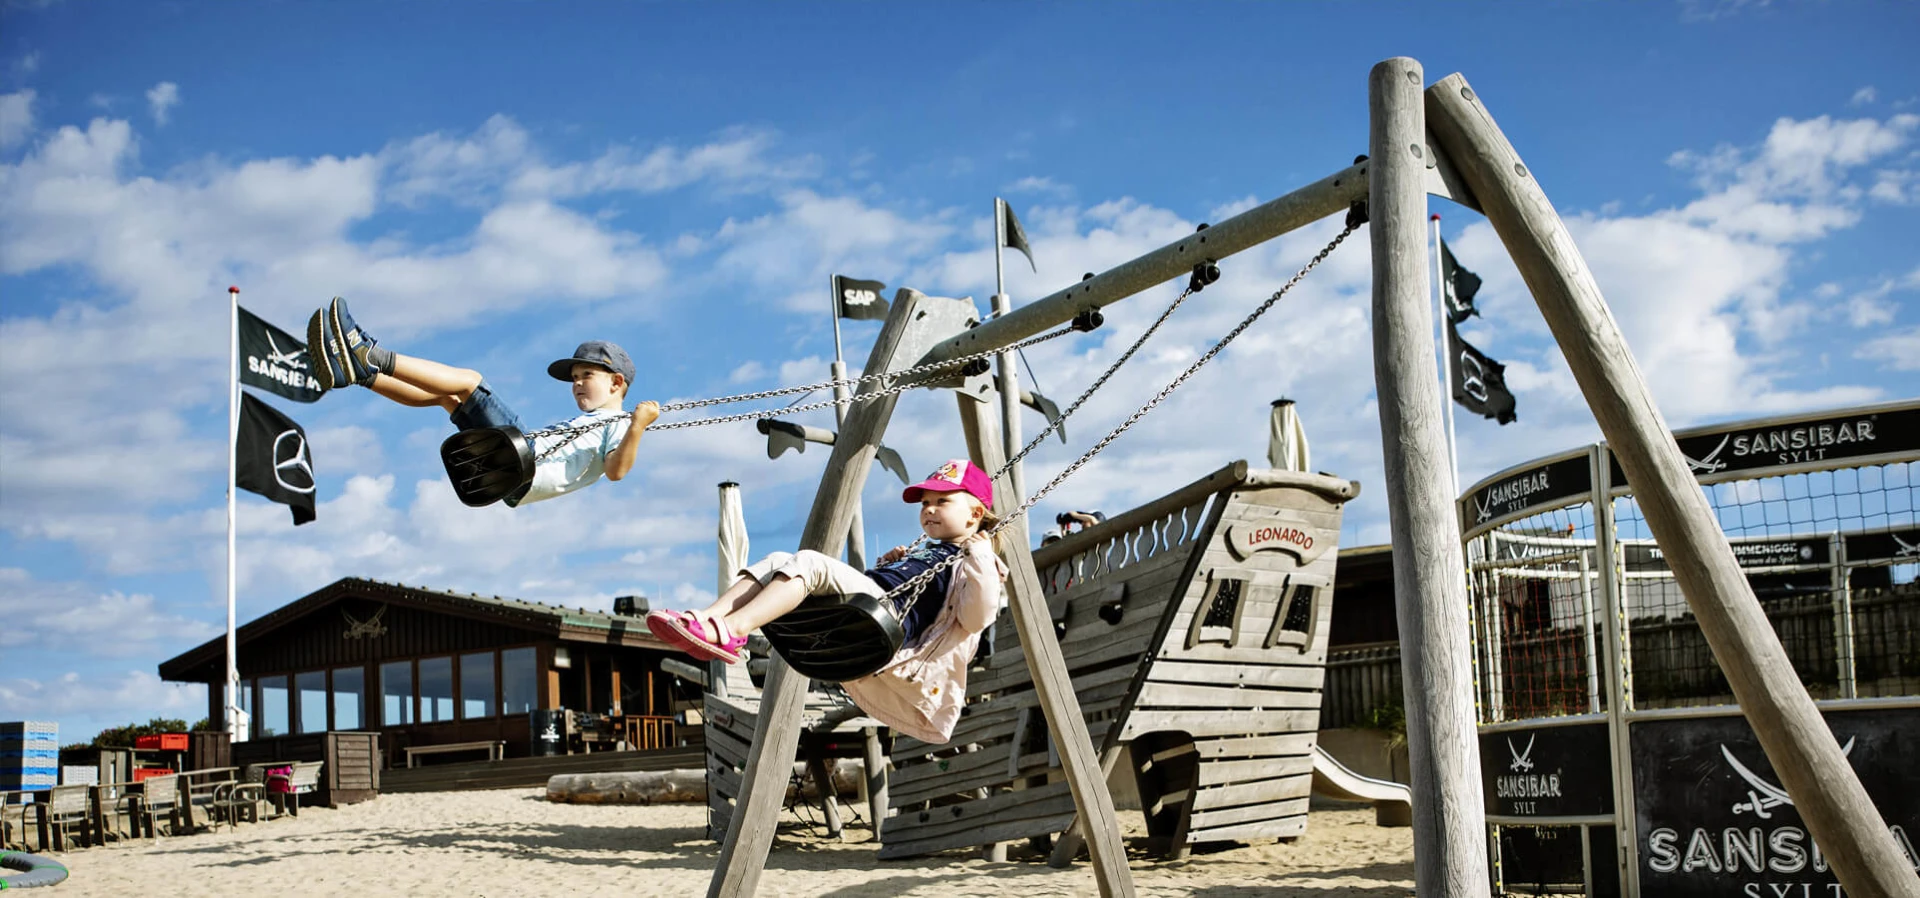 Kinderen spelen op een houten schommel